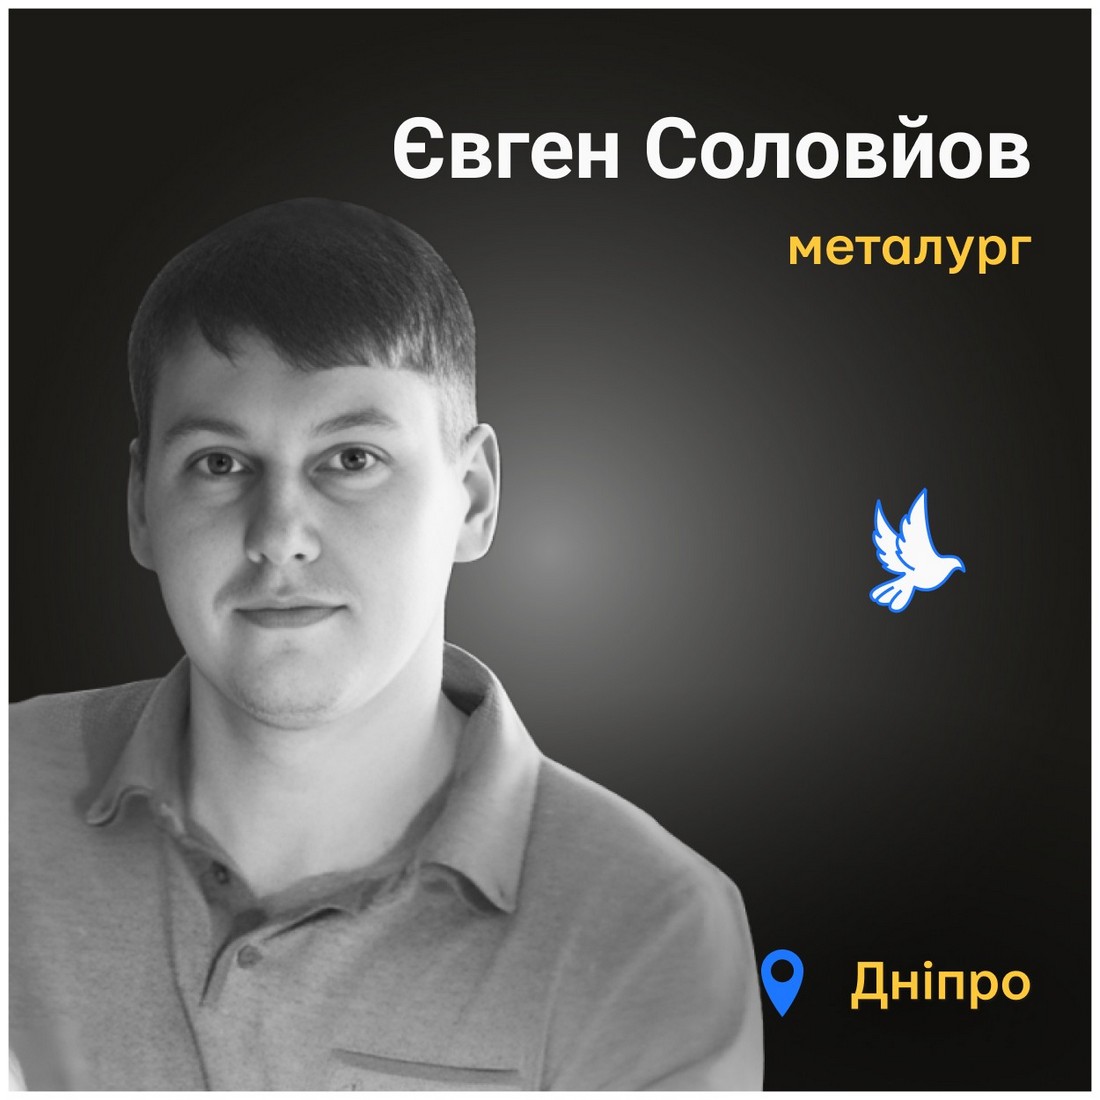 Меморіал: вбиті росією. Євген Соловйов, 35 років, Дніпро, січень